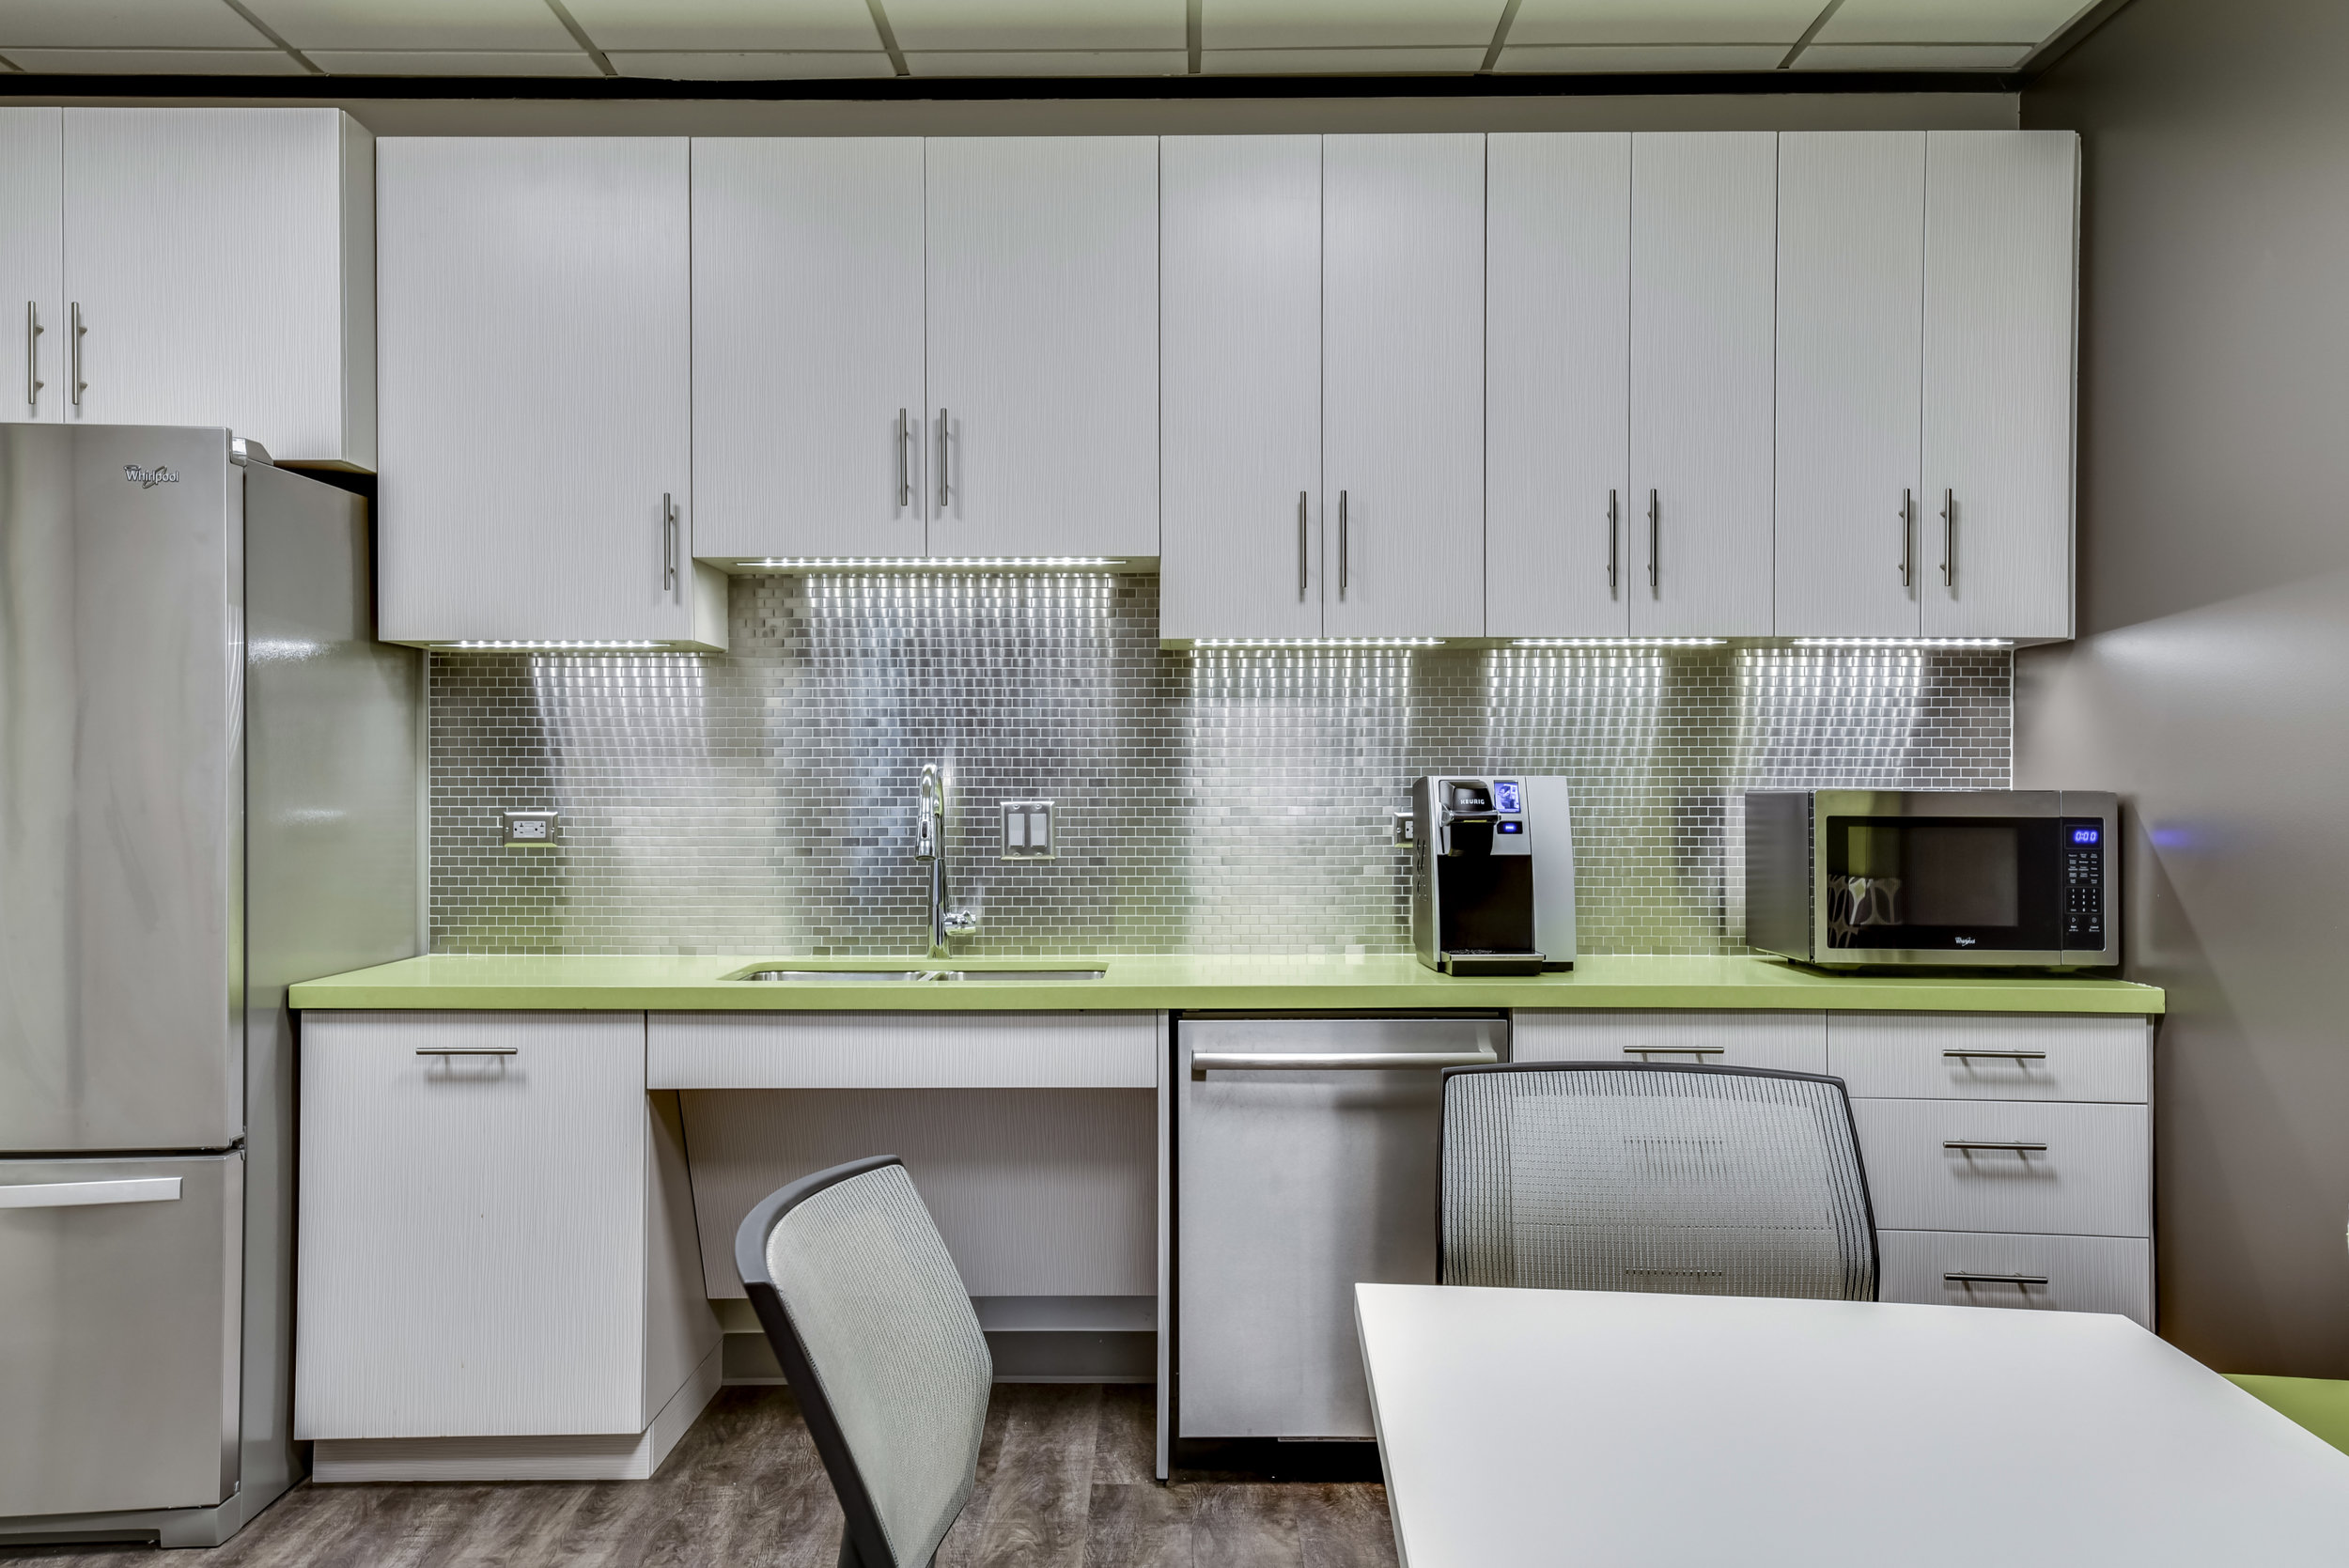 Office Kitchen Interior Design with Beautiful Kitchen Backsplash